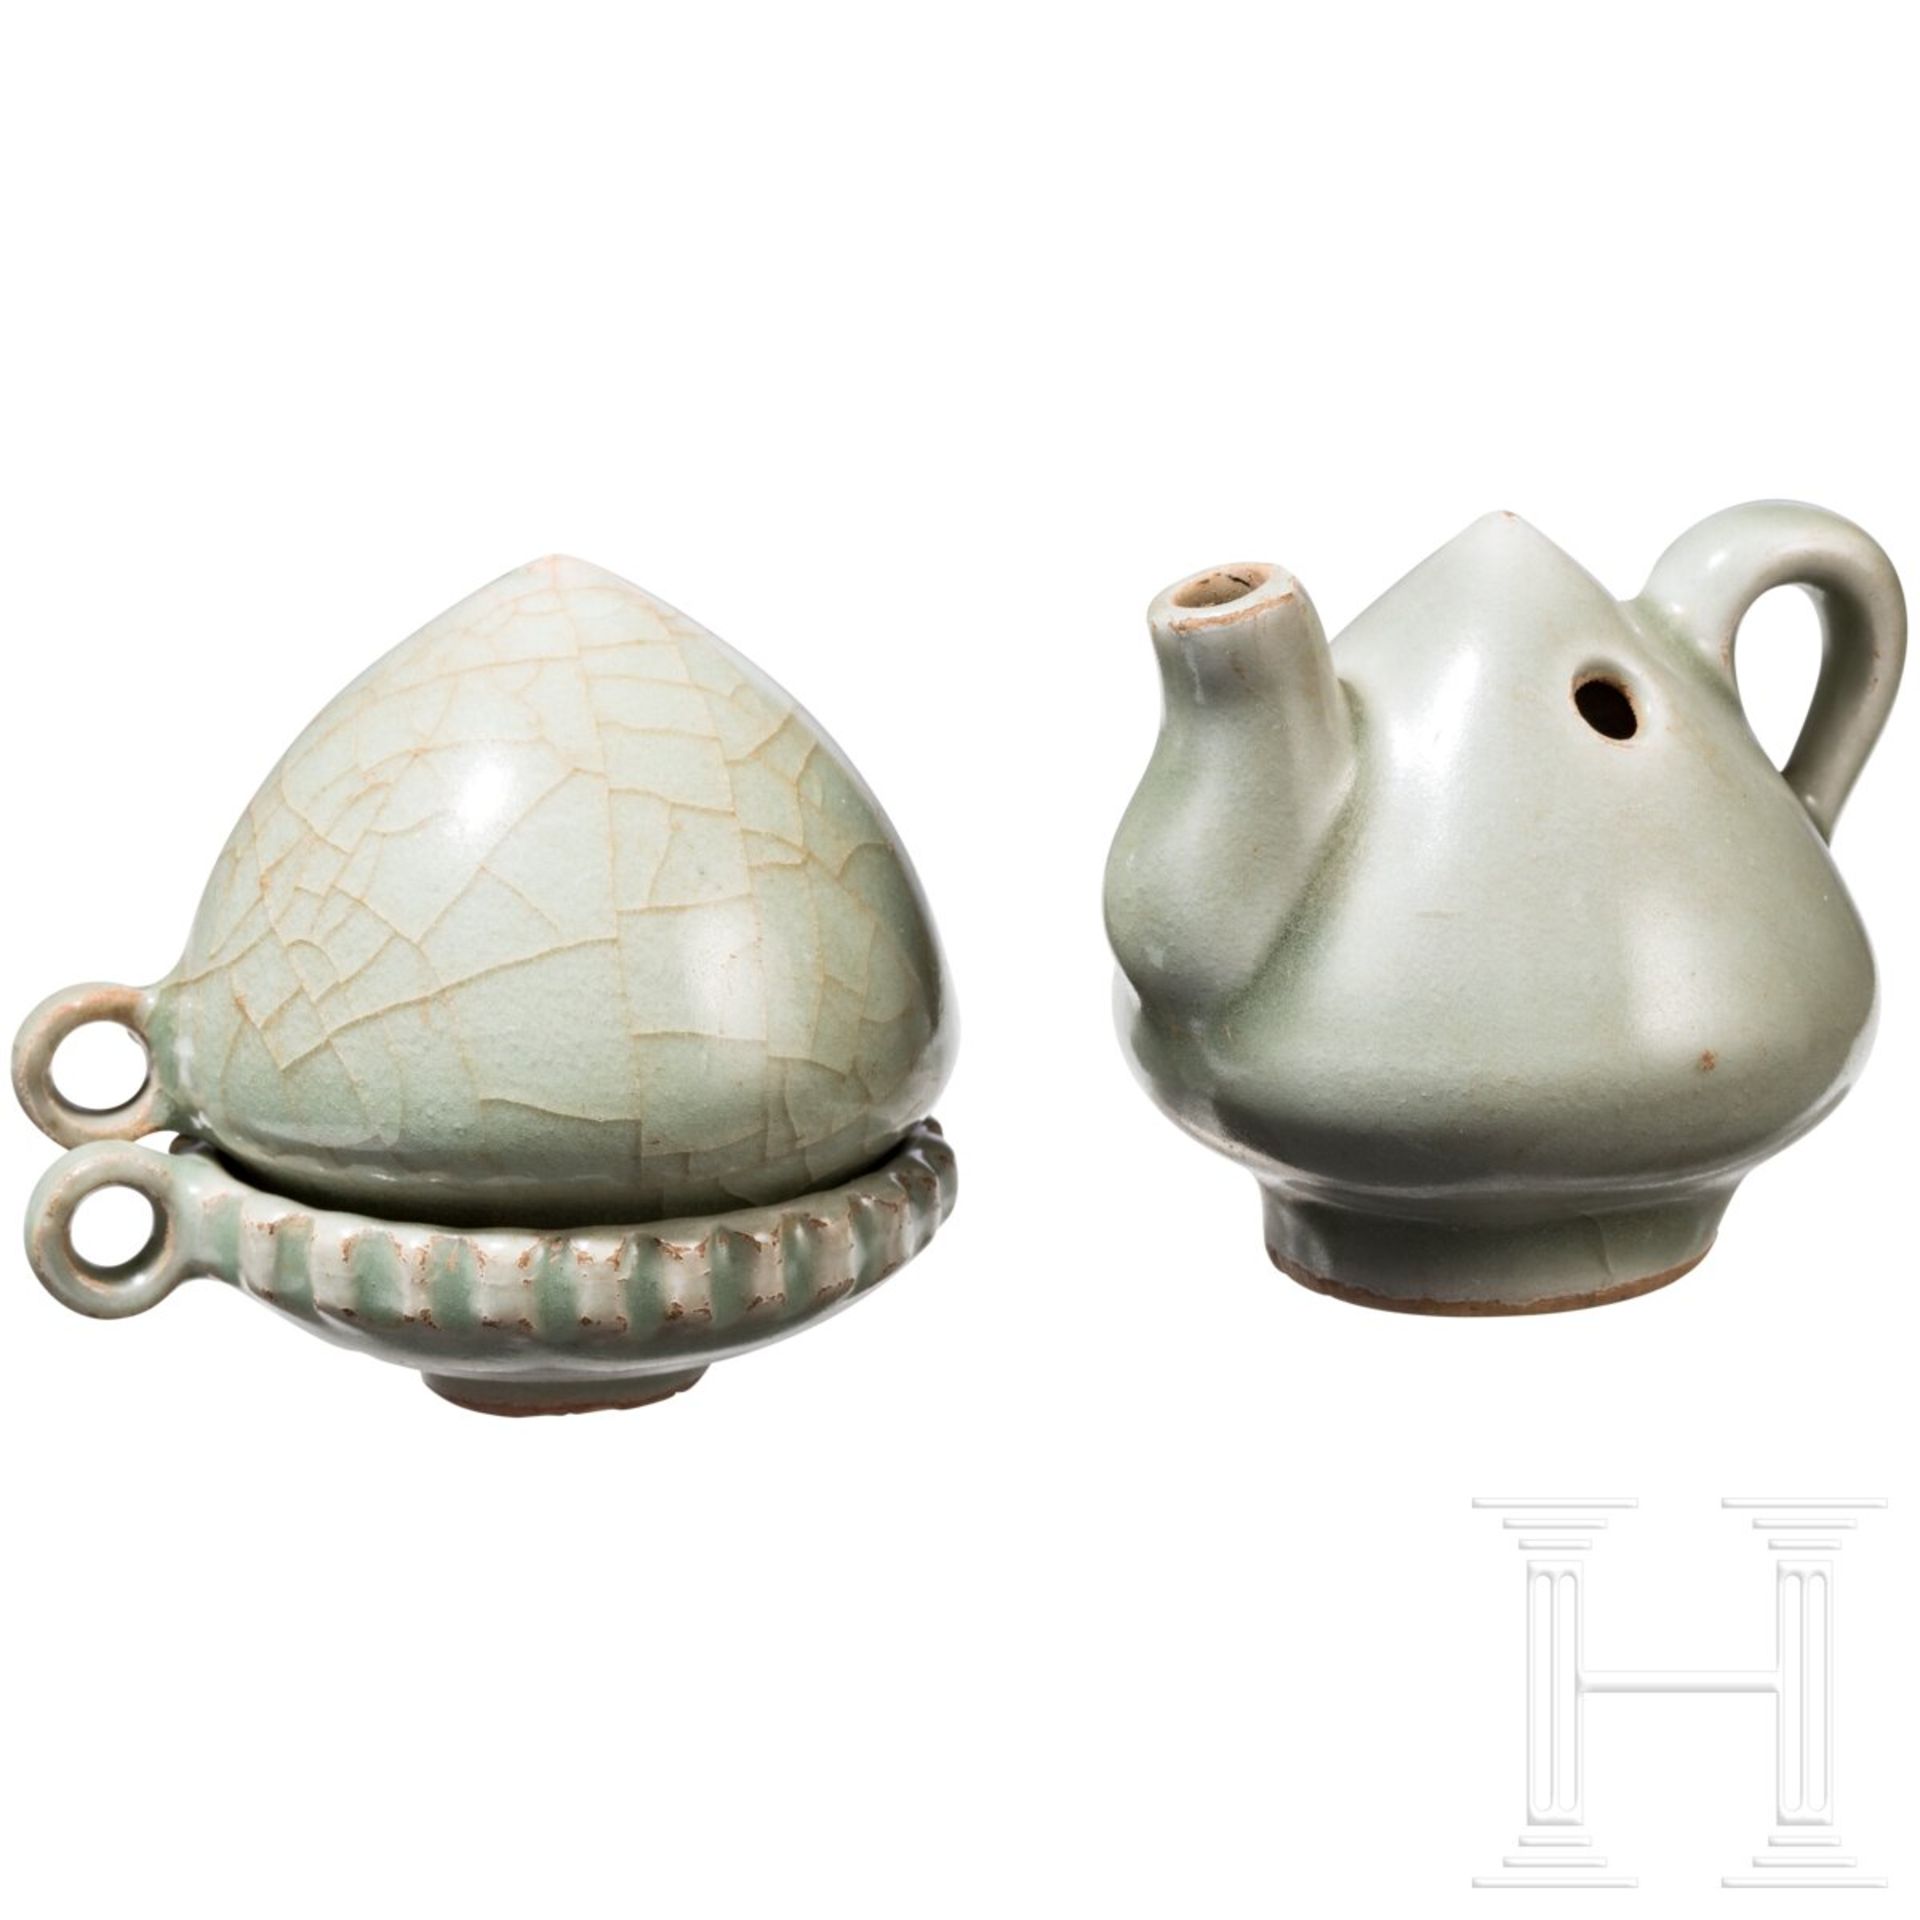 Zwei Longquan-Miniaturtassen sowie Teekanne, China, wahrscheinlich Ming-Dynastie - Image 4 of 16